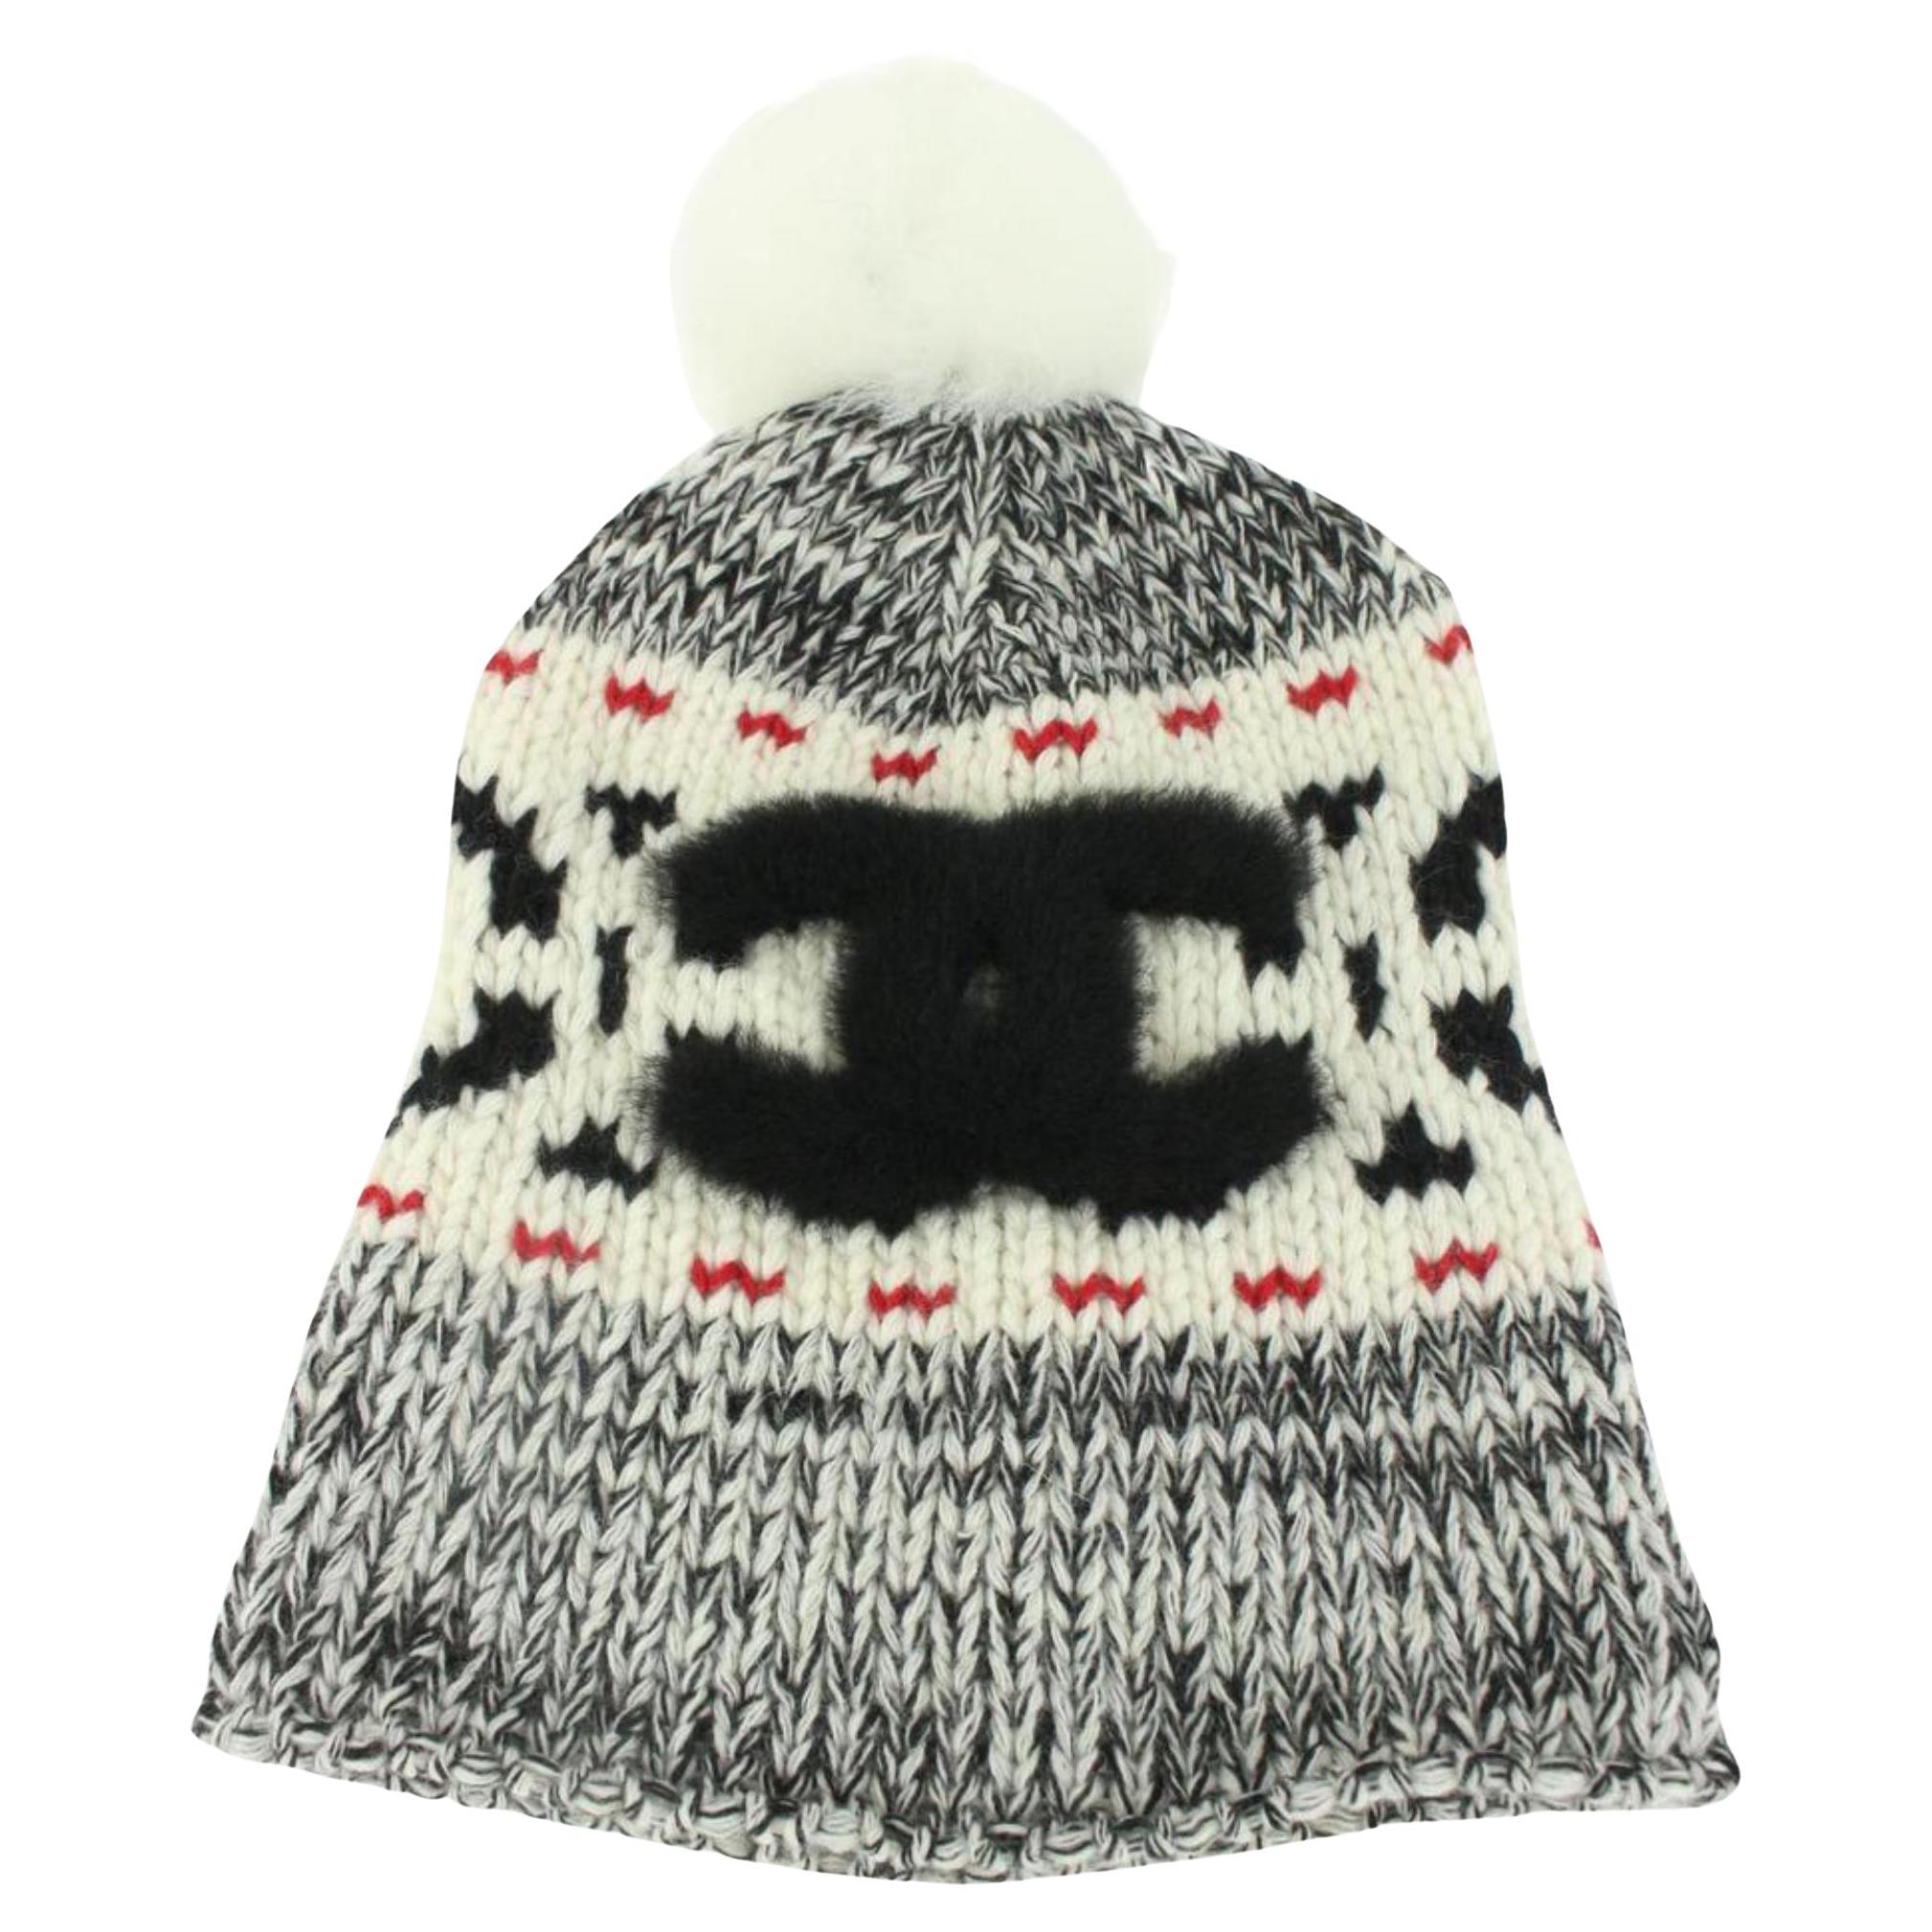 Chanel Black x White x Red CC Pom Pom Beanie Ski Hat Skully Cap 1213c6